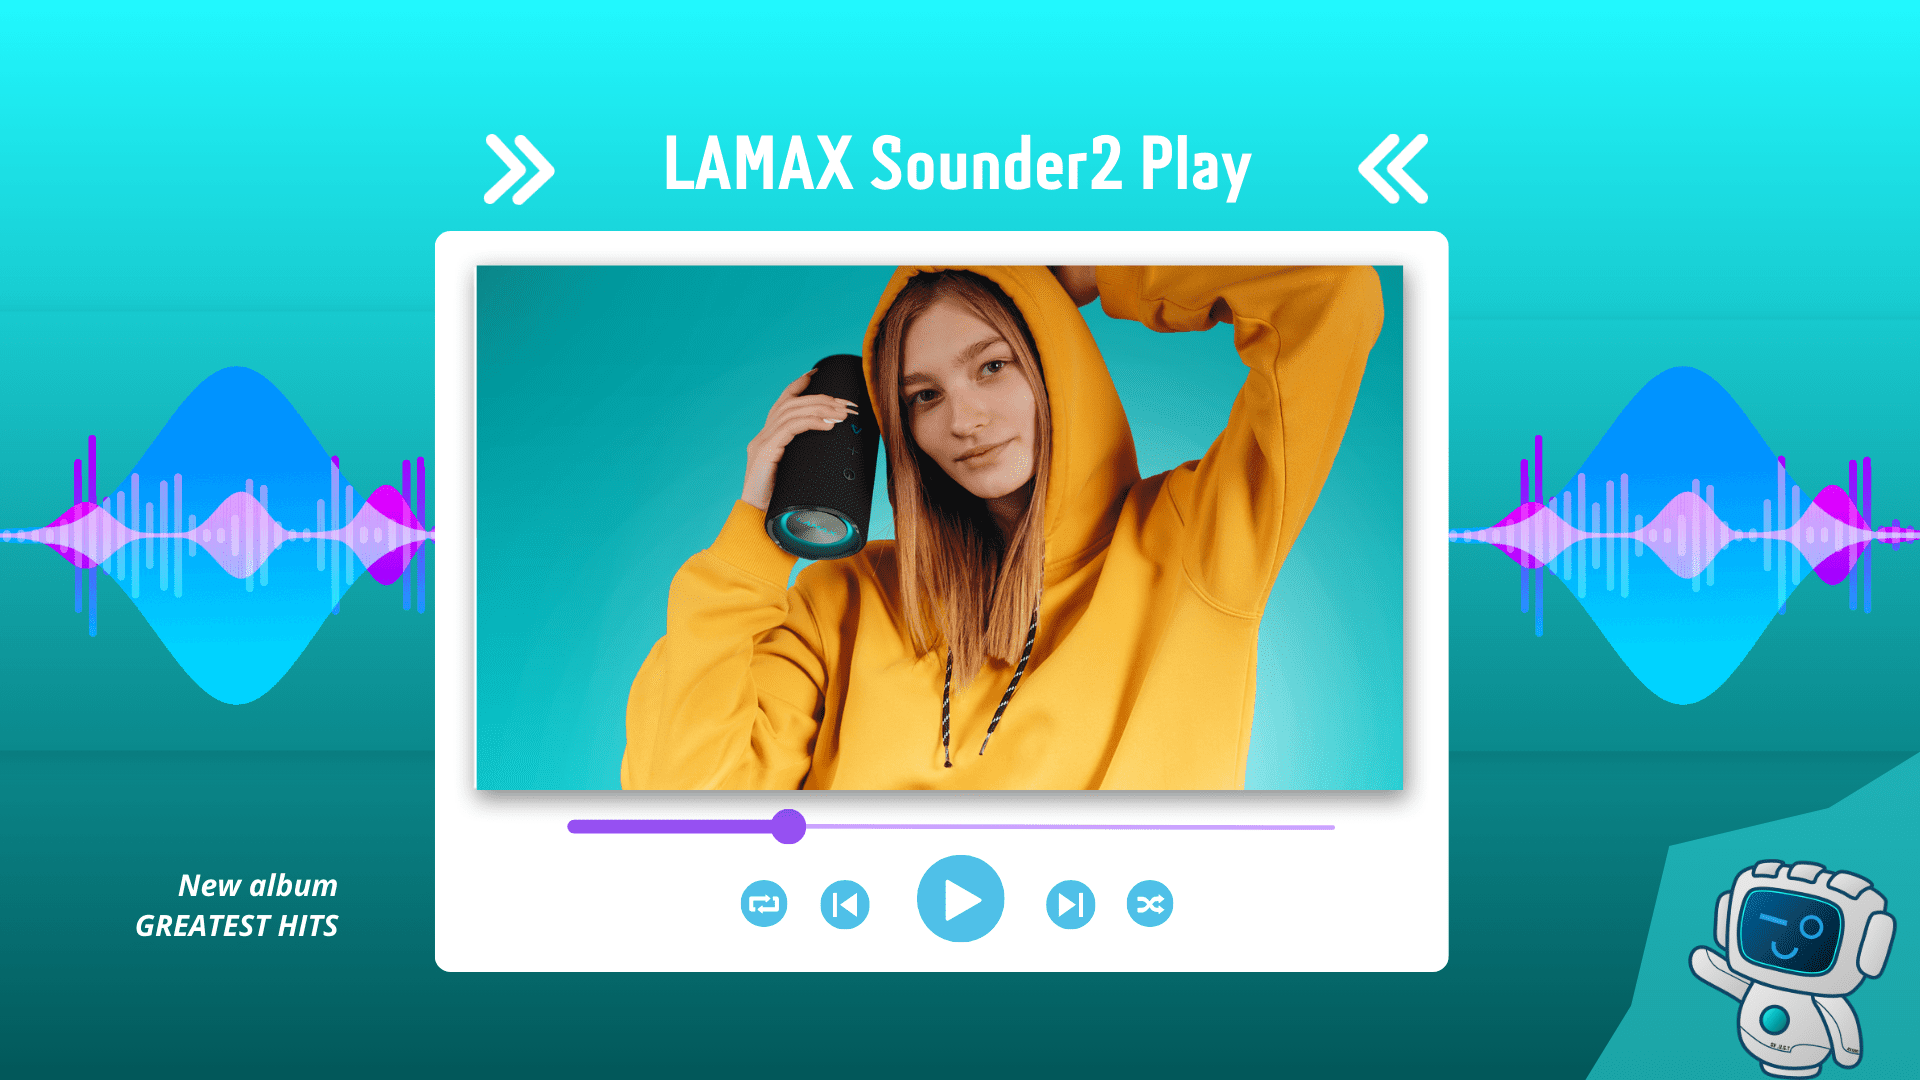 Impreza, która mieści się w torbie - Głośnik LAMAX Sounder2 Play